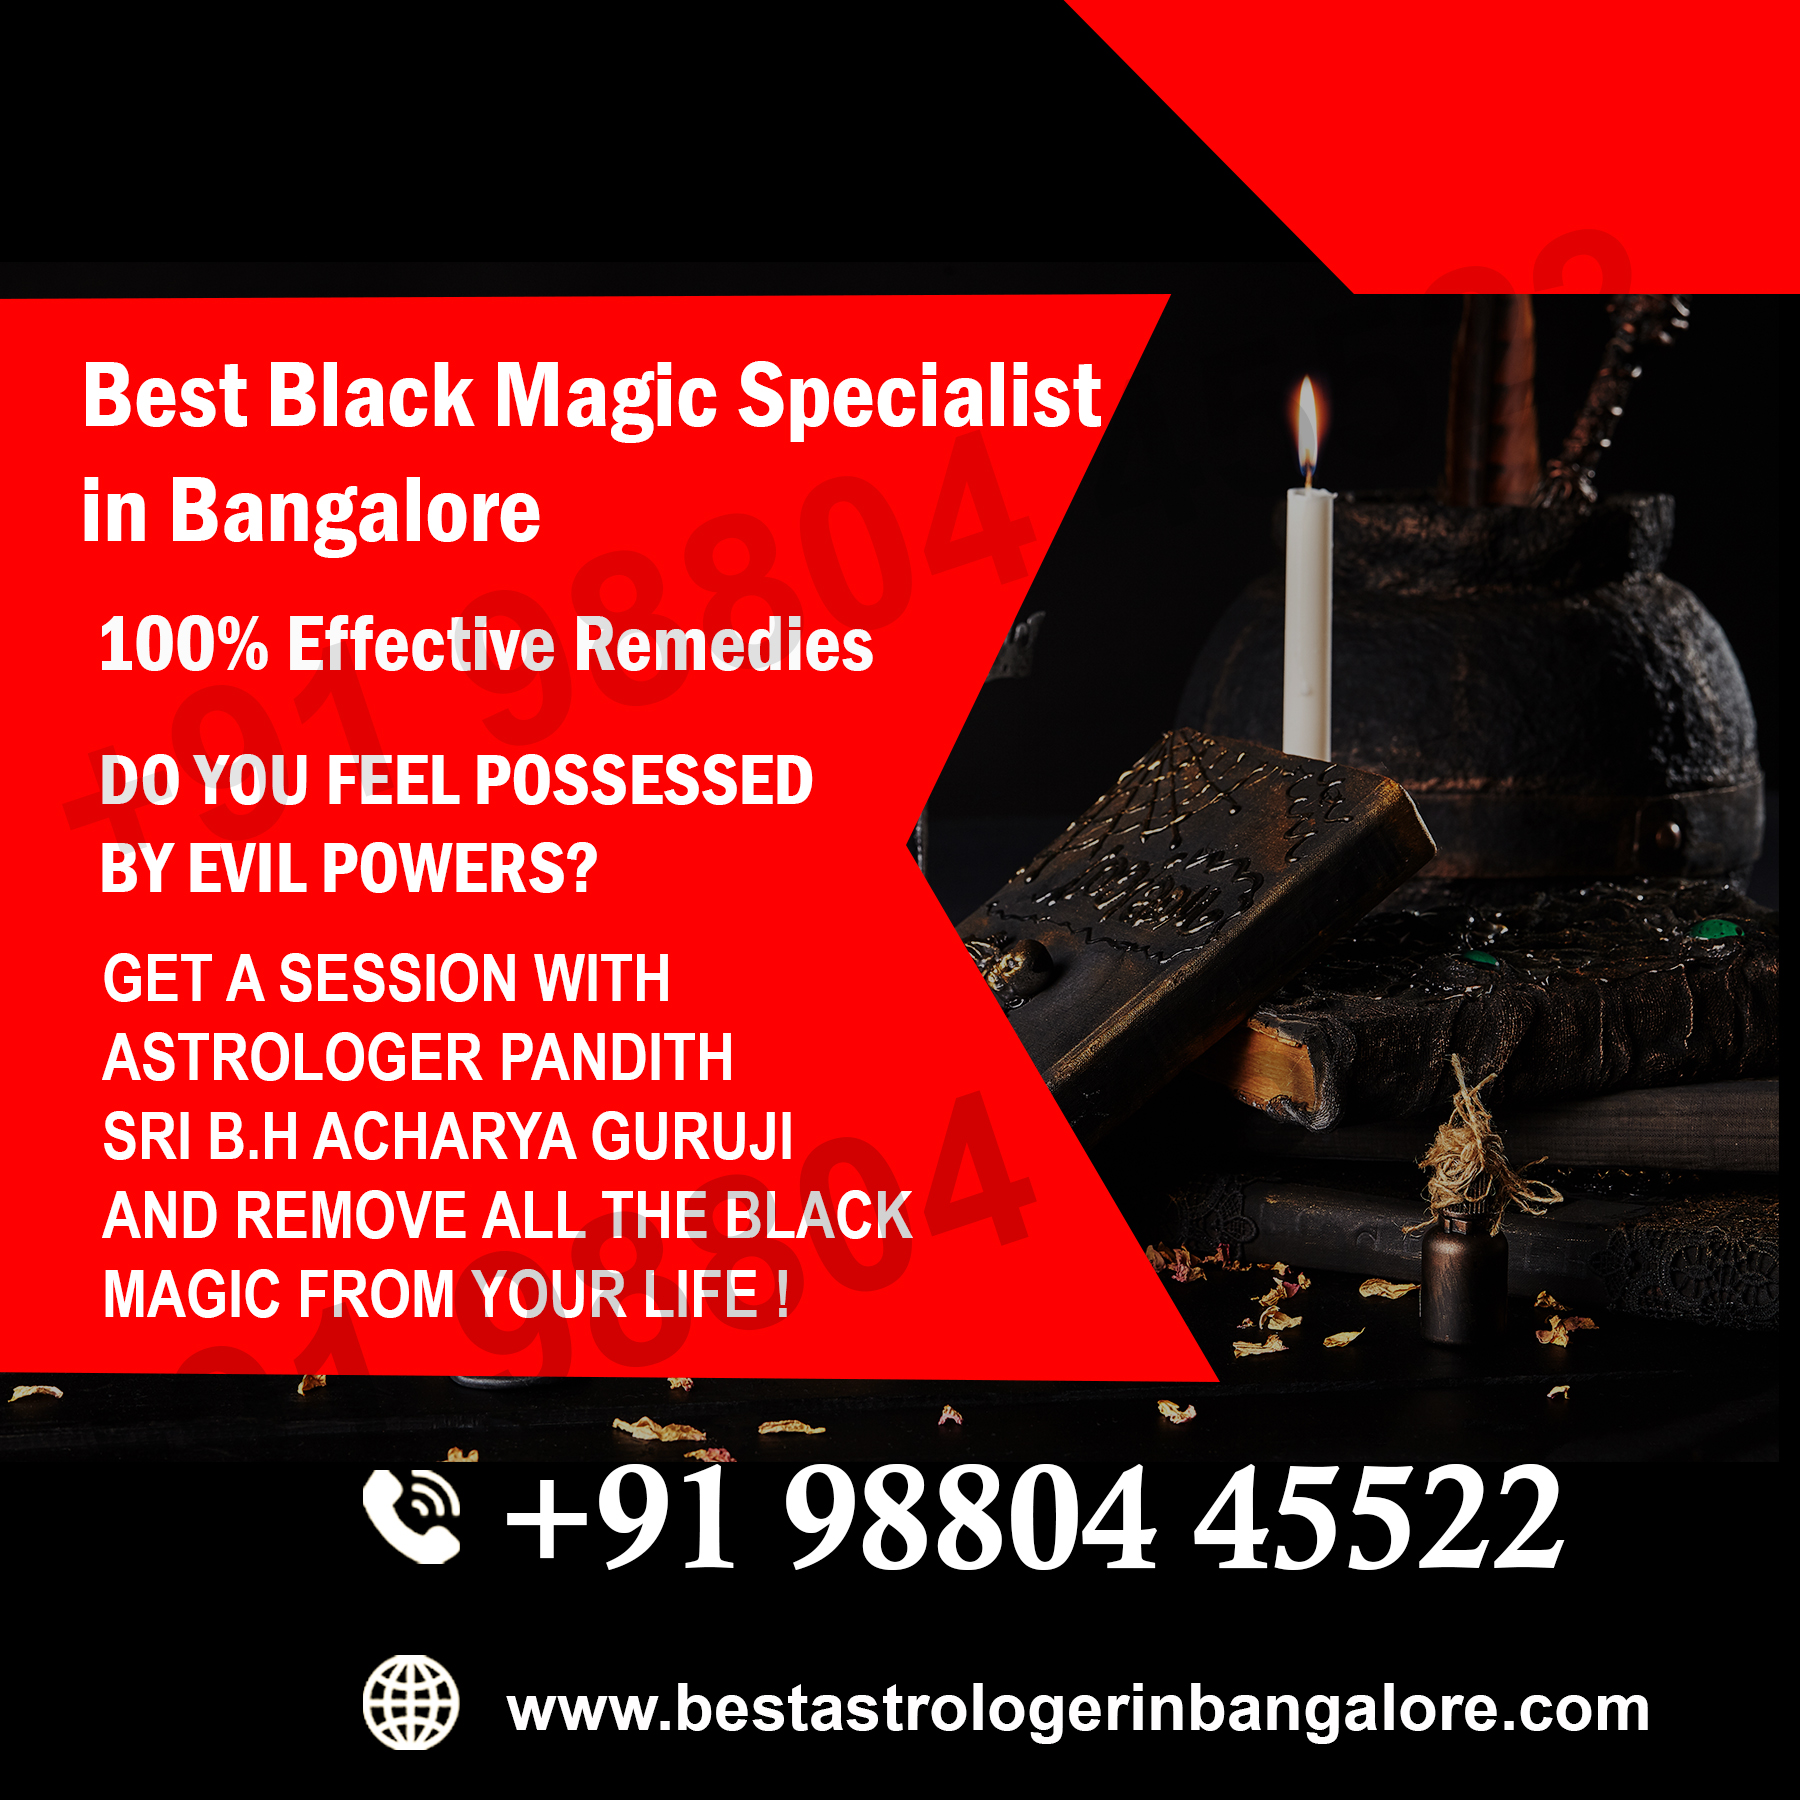 Best Black Magic Specialist in Bangalore